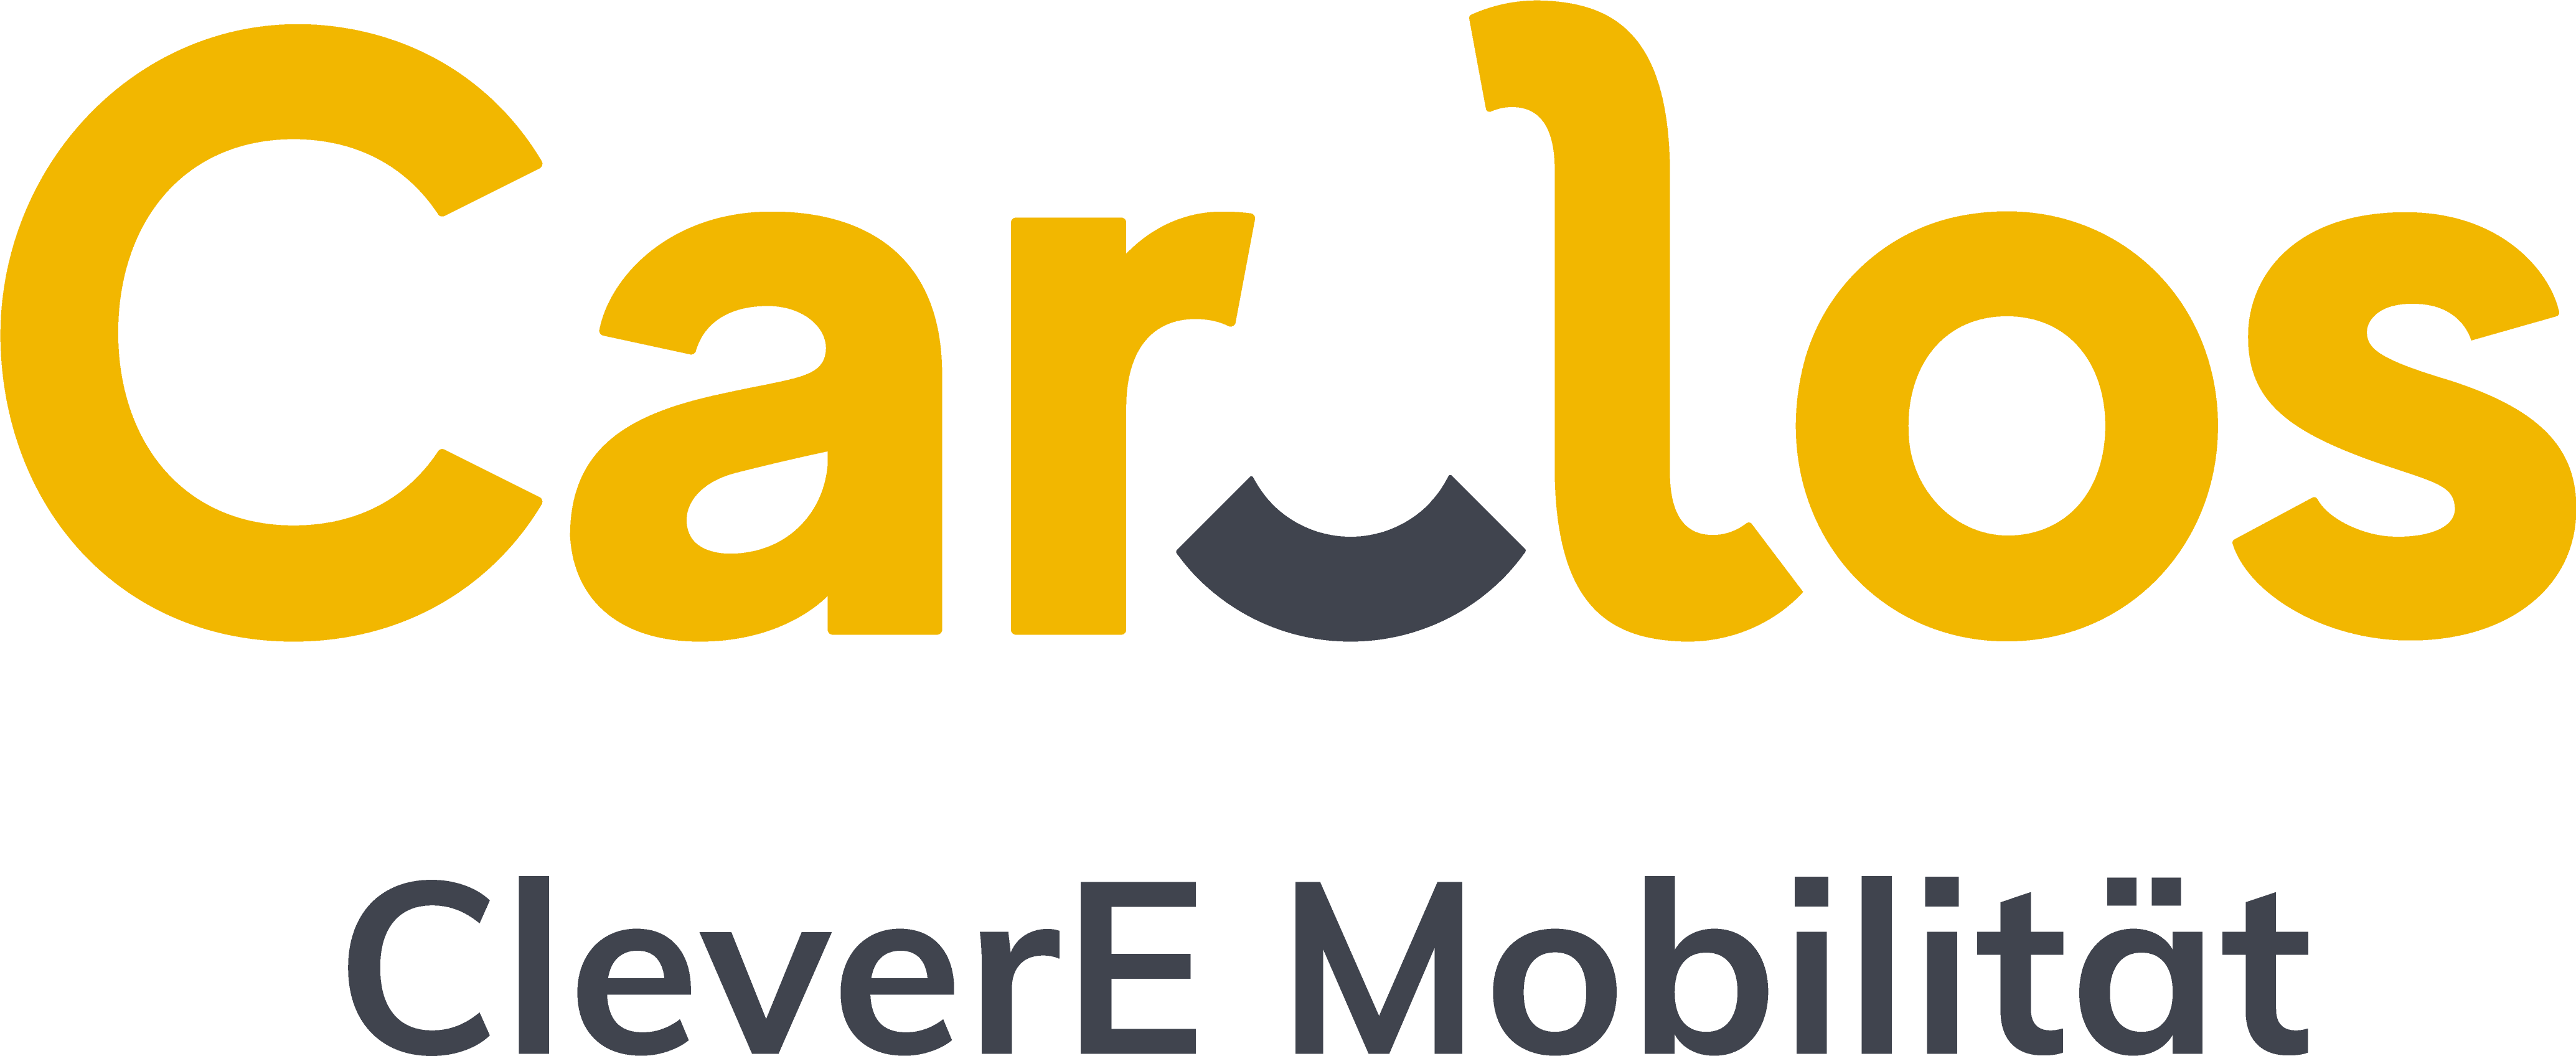 Carlos-Logo_gelb-grau